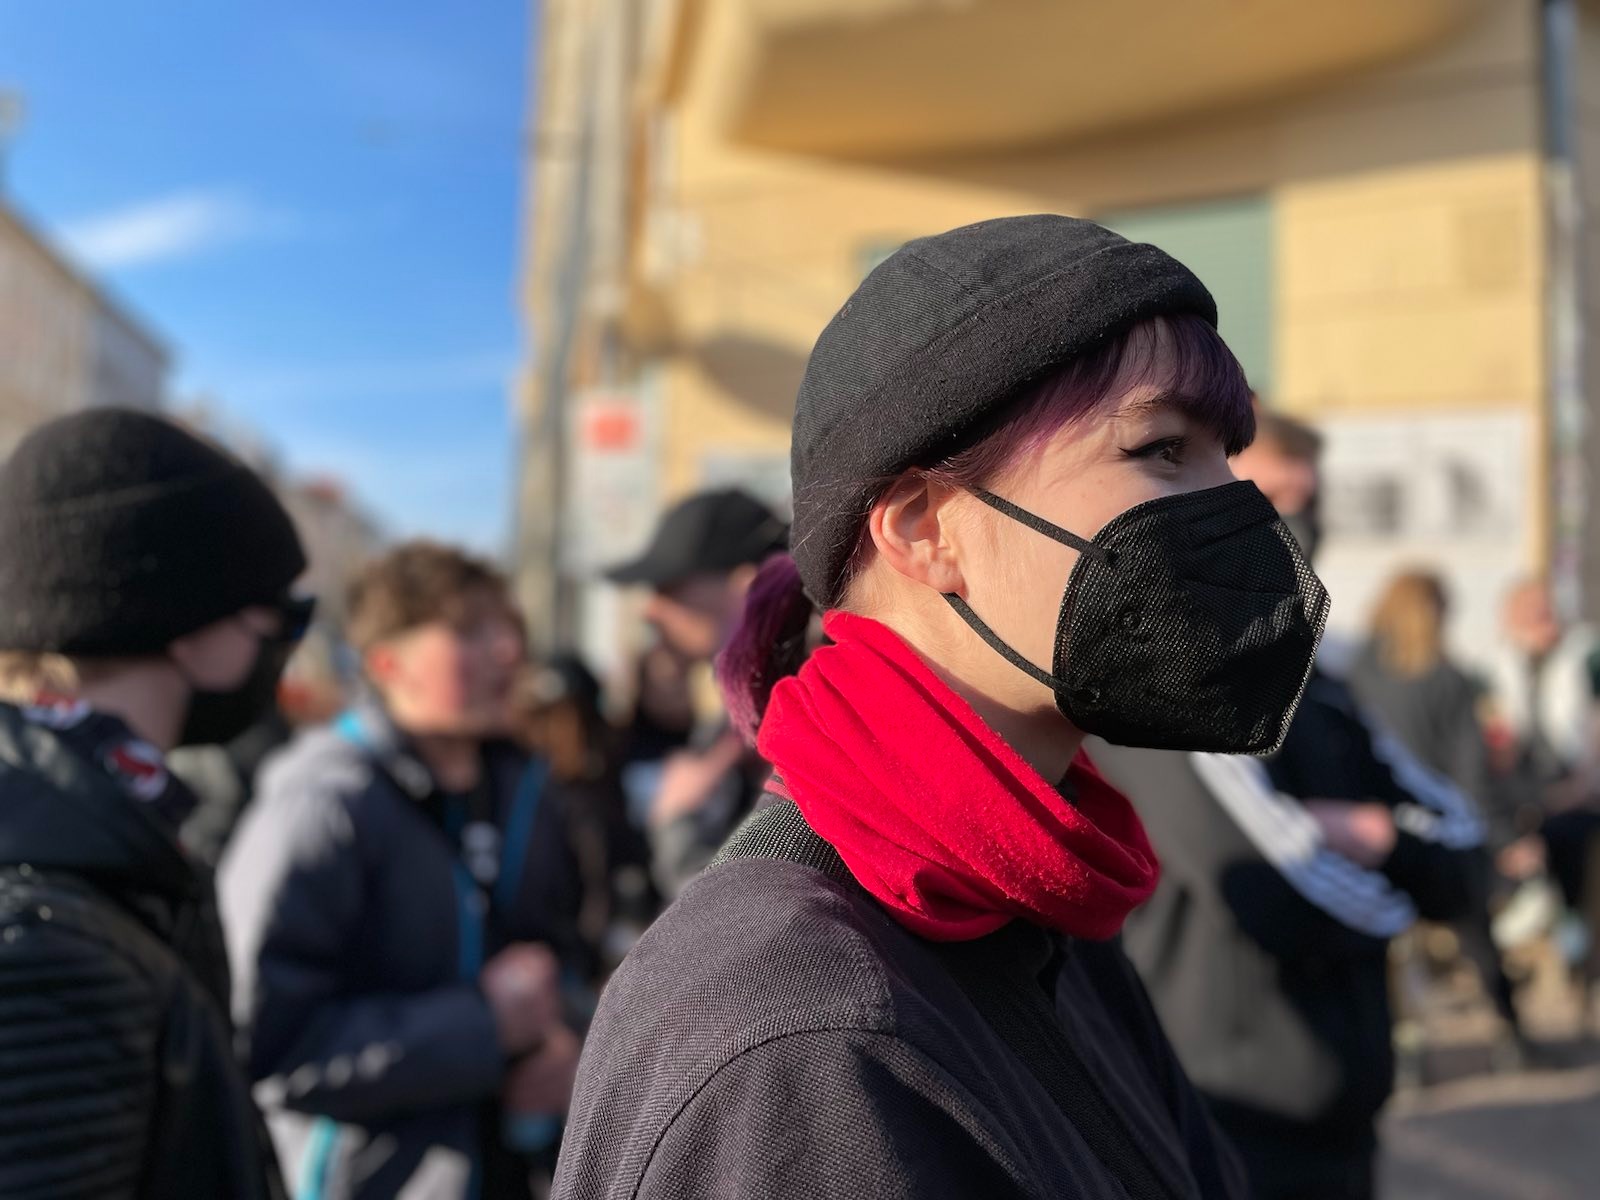   Maskenpflicht vs. Maskenverbot | Die Polizei Sachsen hat aus der aufgehobenen Maskenpflicht auf Versammlungen ein faktisches Maskenverbot gemacht  